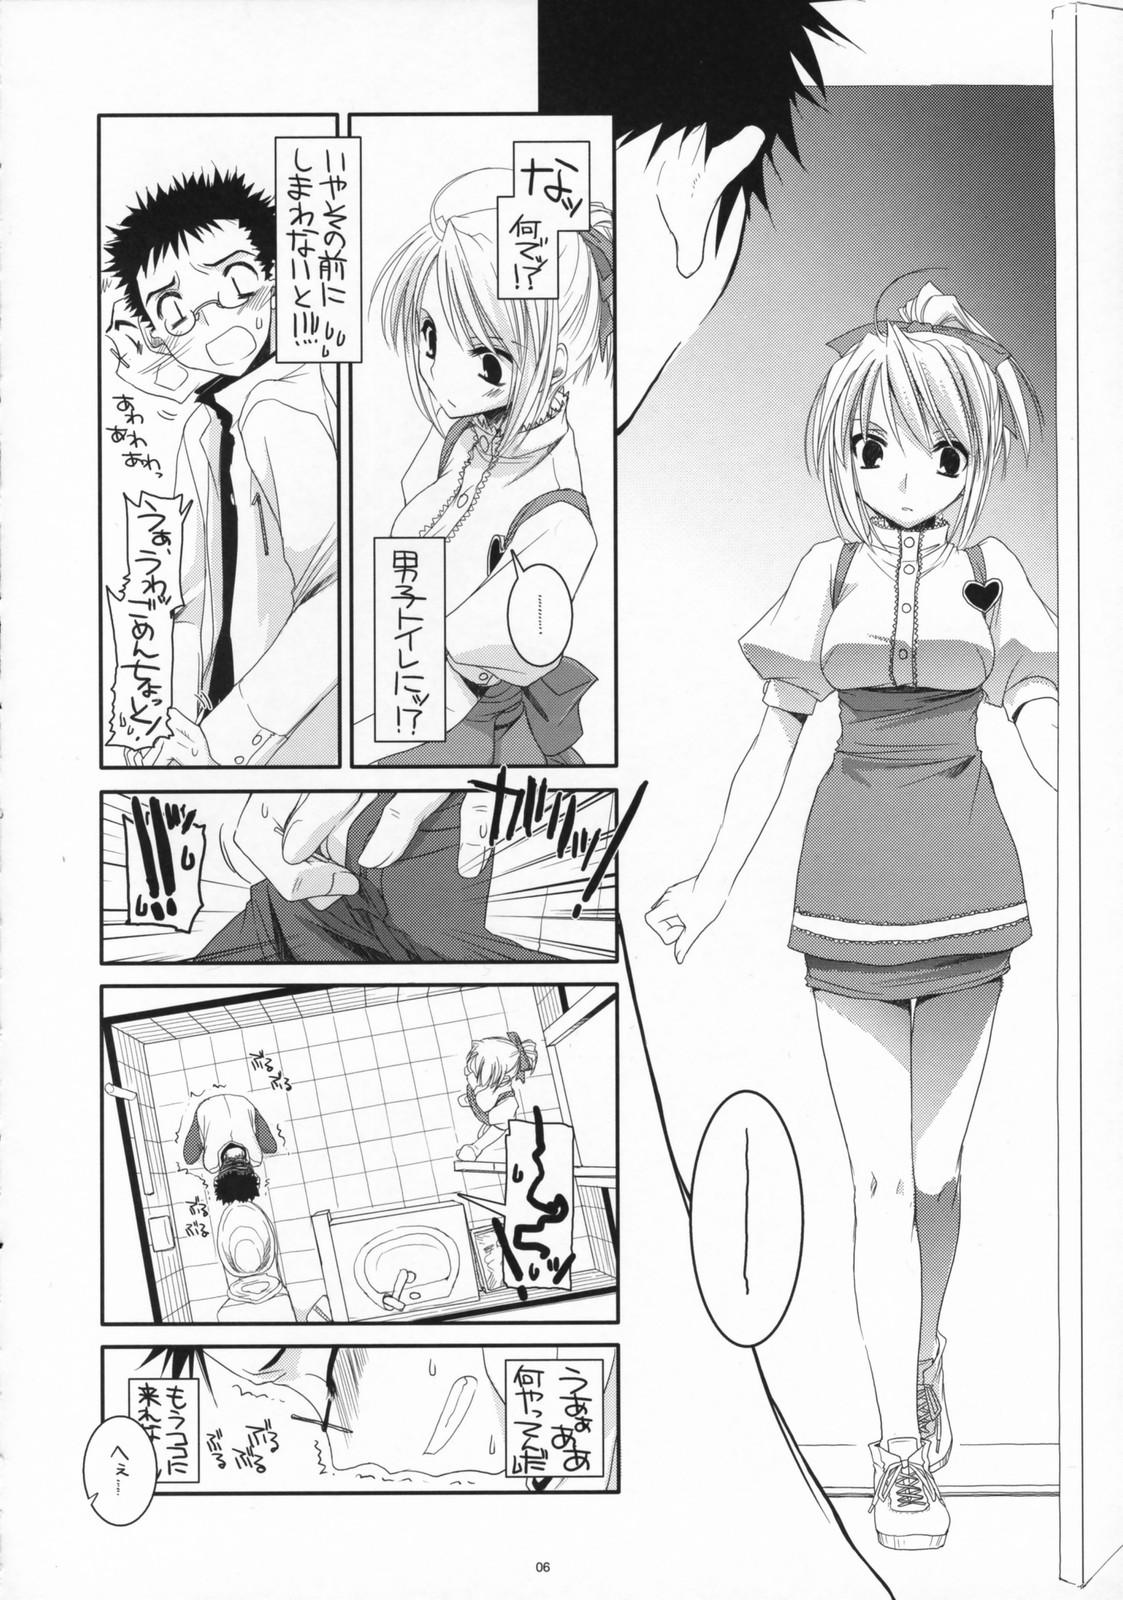 Curious Seifuku Rakuen 16 - Costume Paradise 16 Pendeja - Page 5